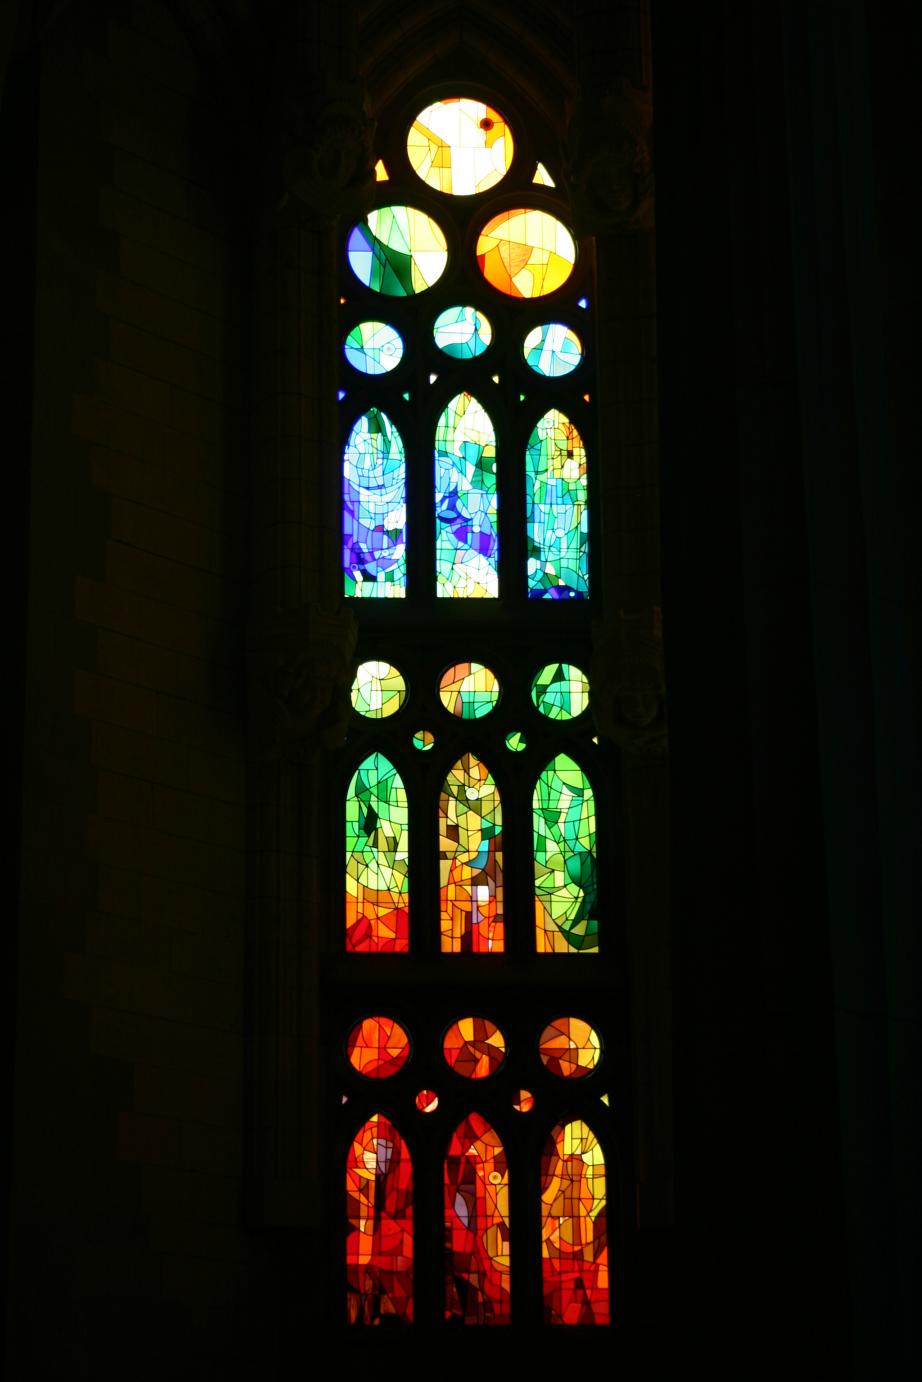 Monday 23rd March, stained glass window in Gaudi's La Sagrada Familia, Barcelona.